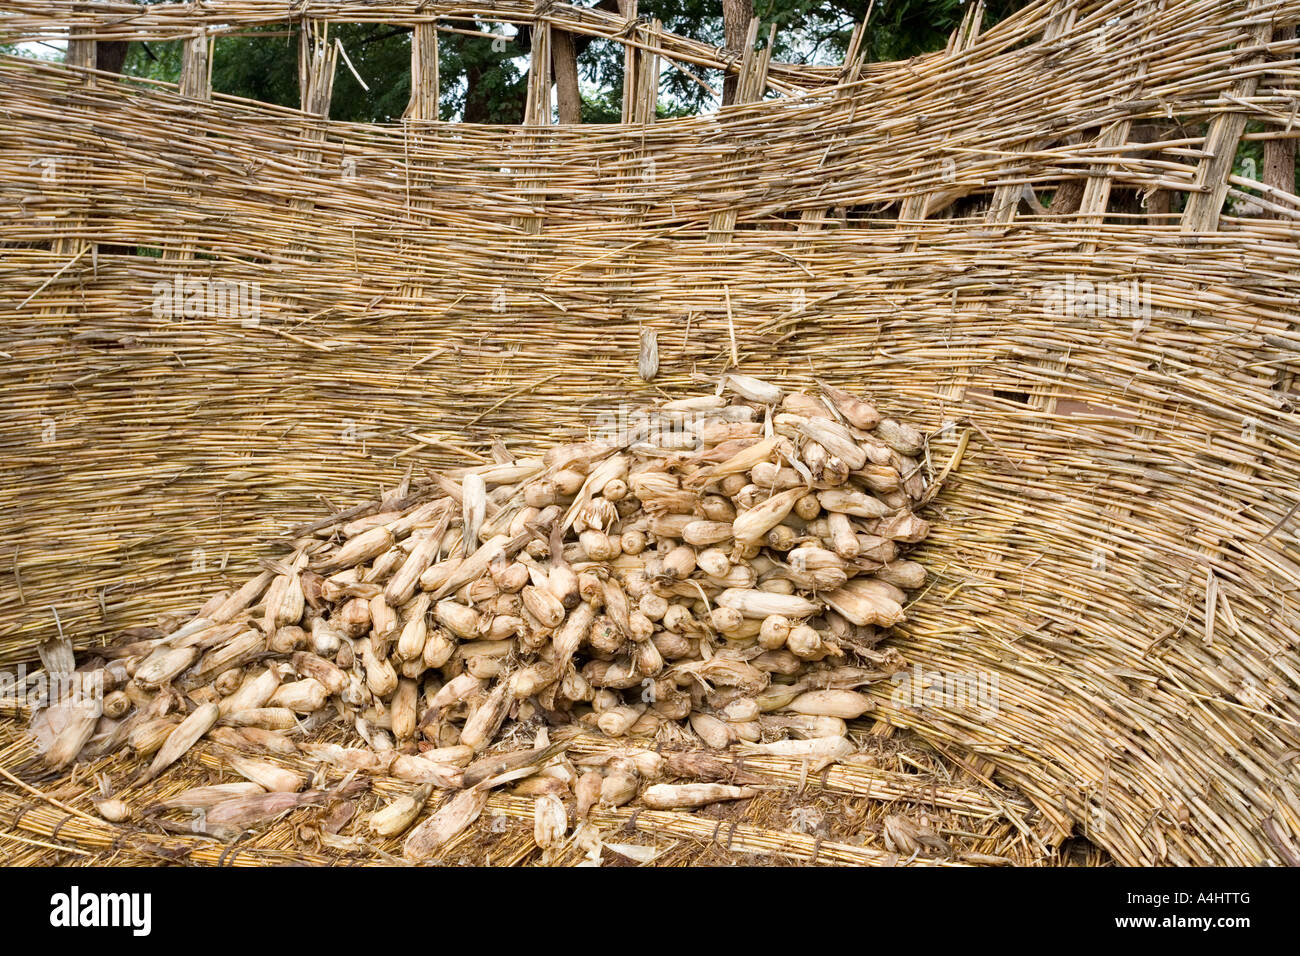 Eine schwindende Versorgung mit Maiskolben in die Getreidespeicher, Garner (Nkhokhwe) in das Dorf Kendekeza, Malawi, Afrika Stockfoto